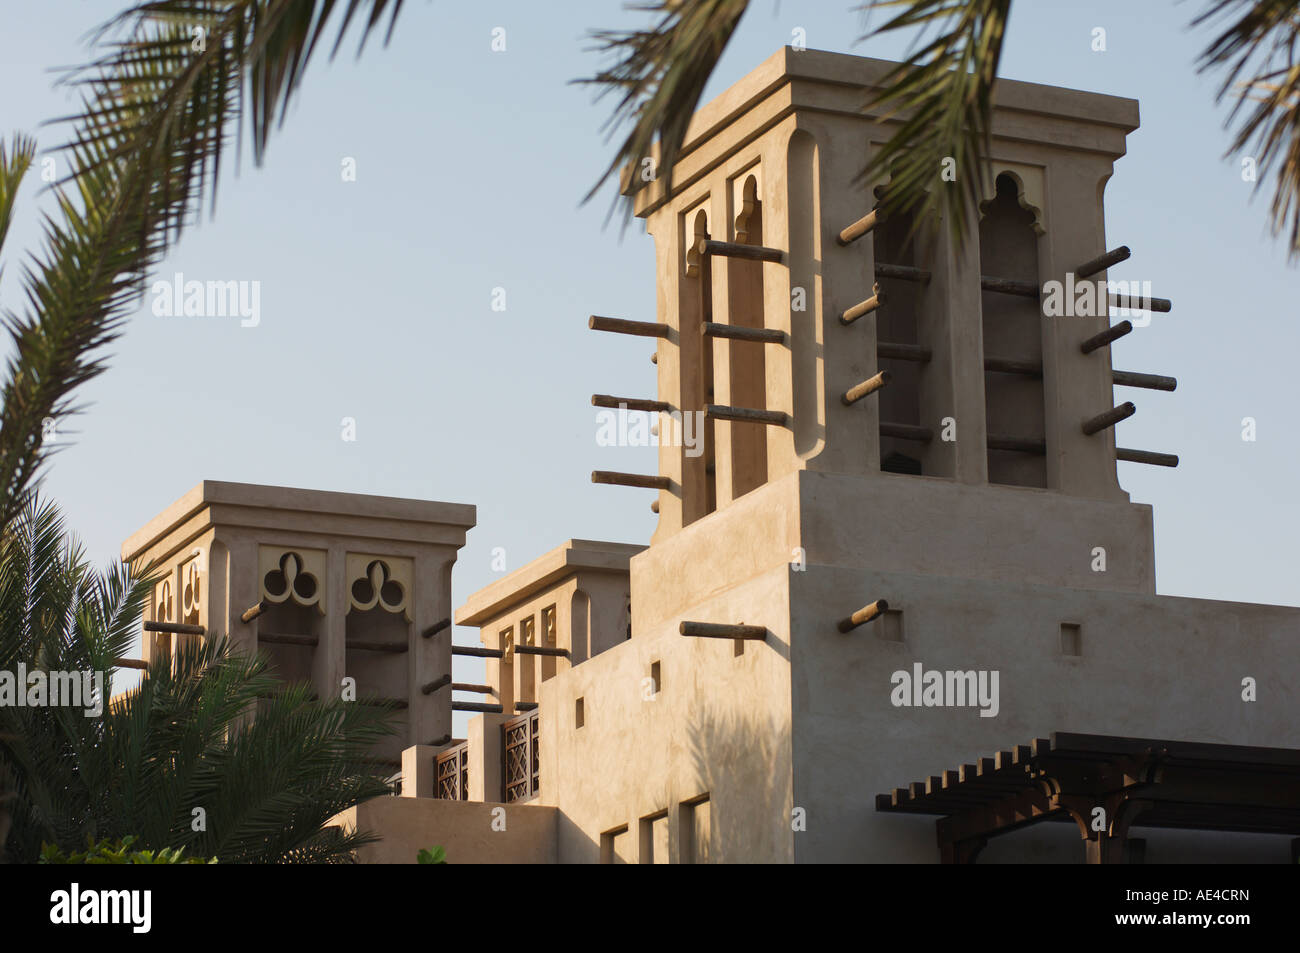 Tours à vent, Madinat Jumeirah Hotel, Dubai, Émirats arabes unis, Moyen Orient Banque D'Images